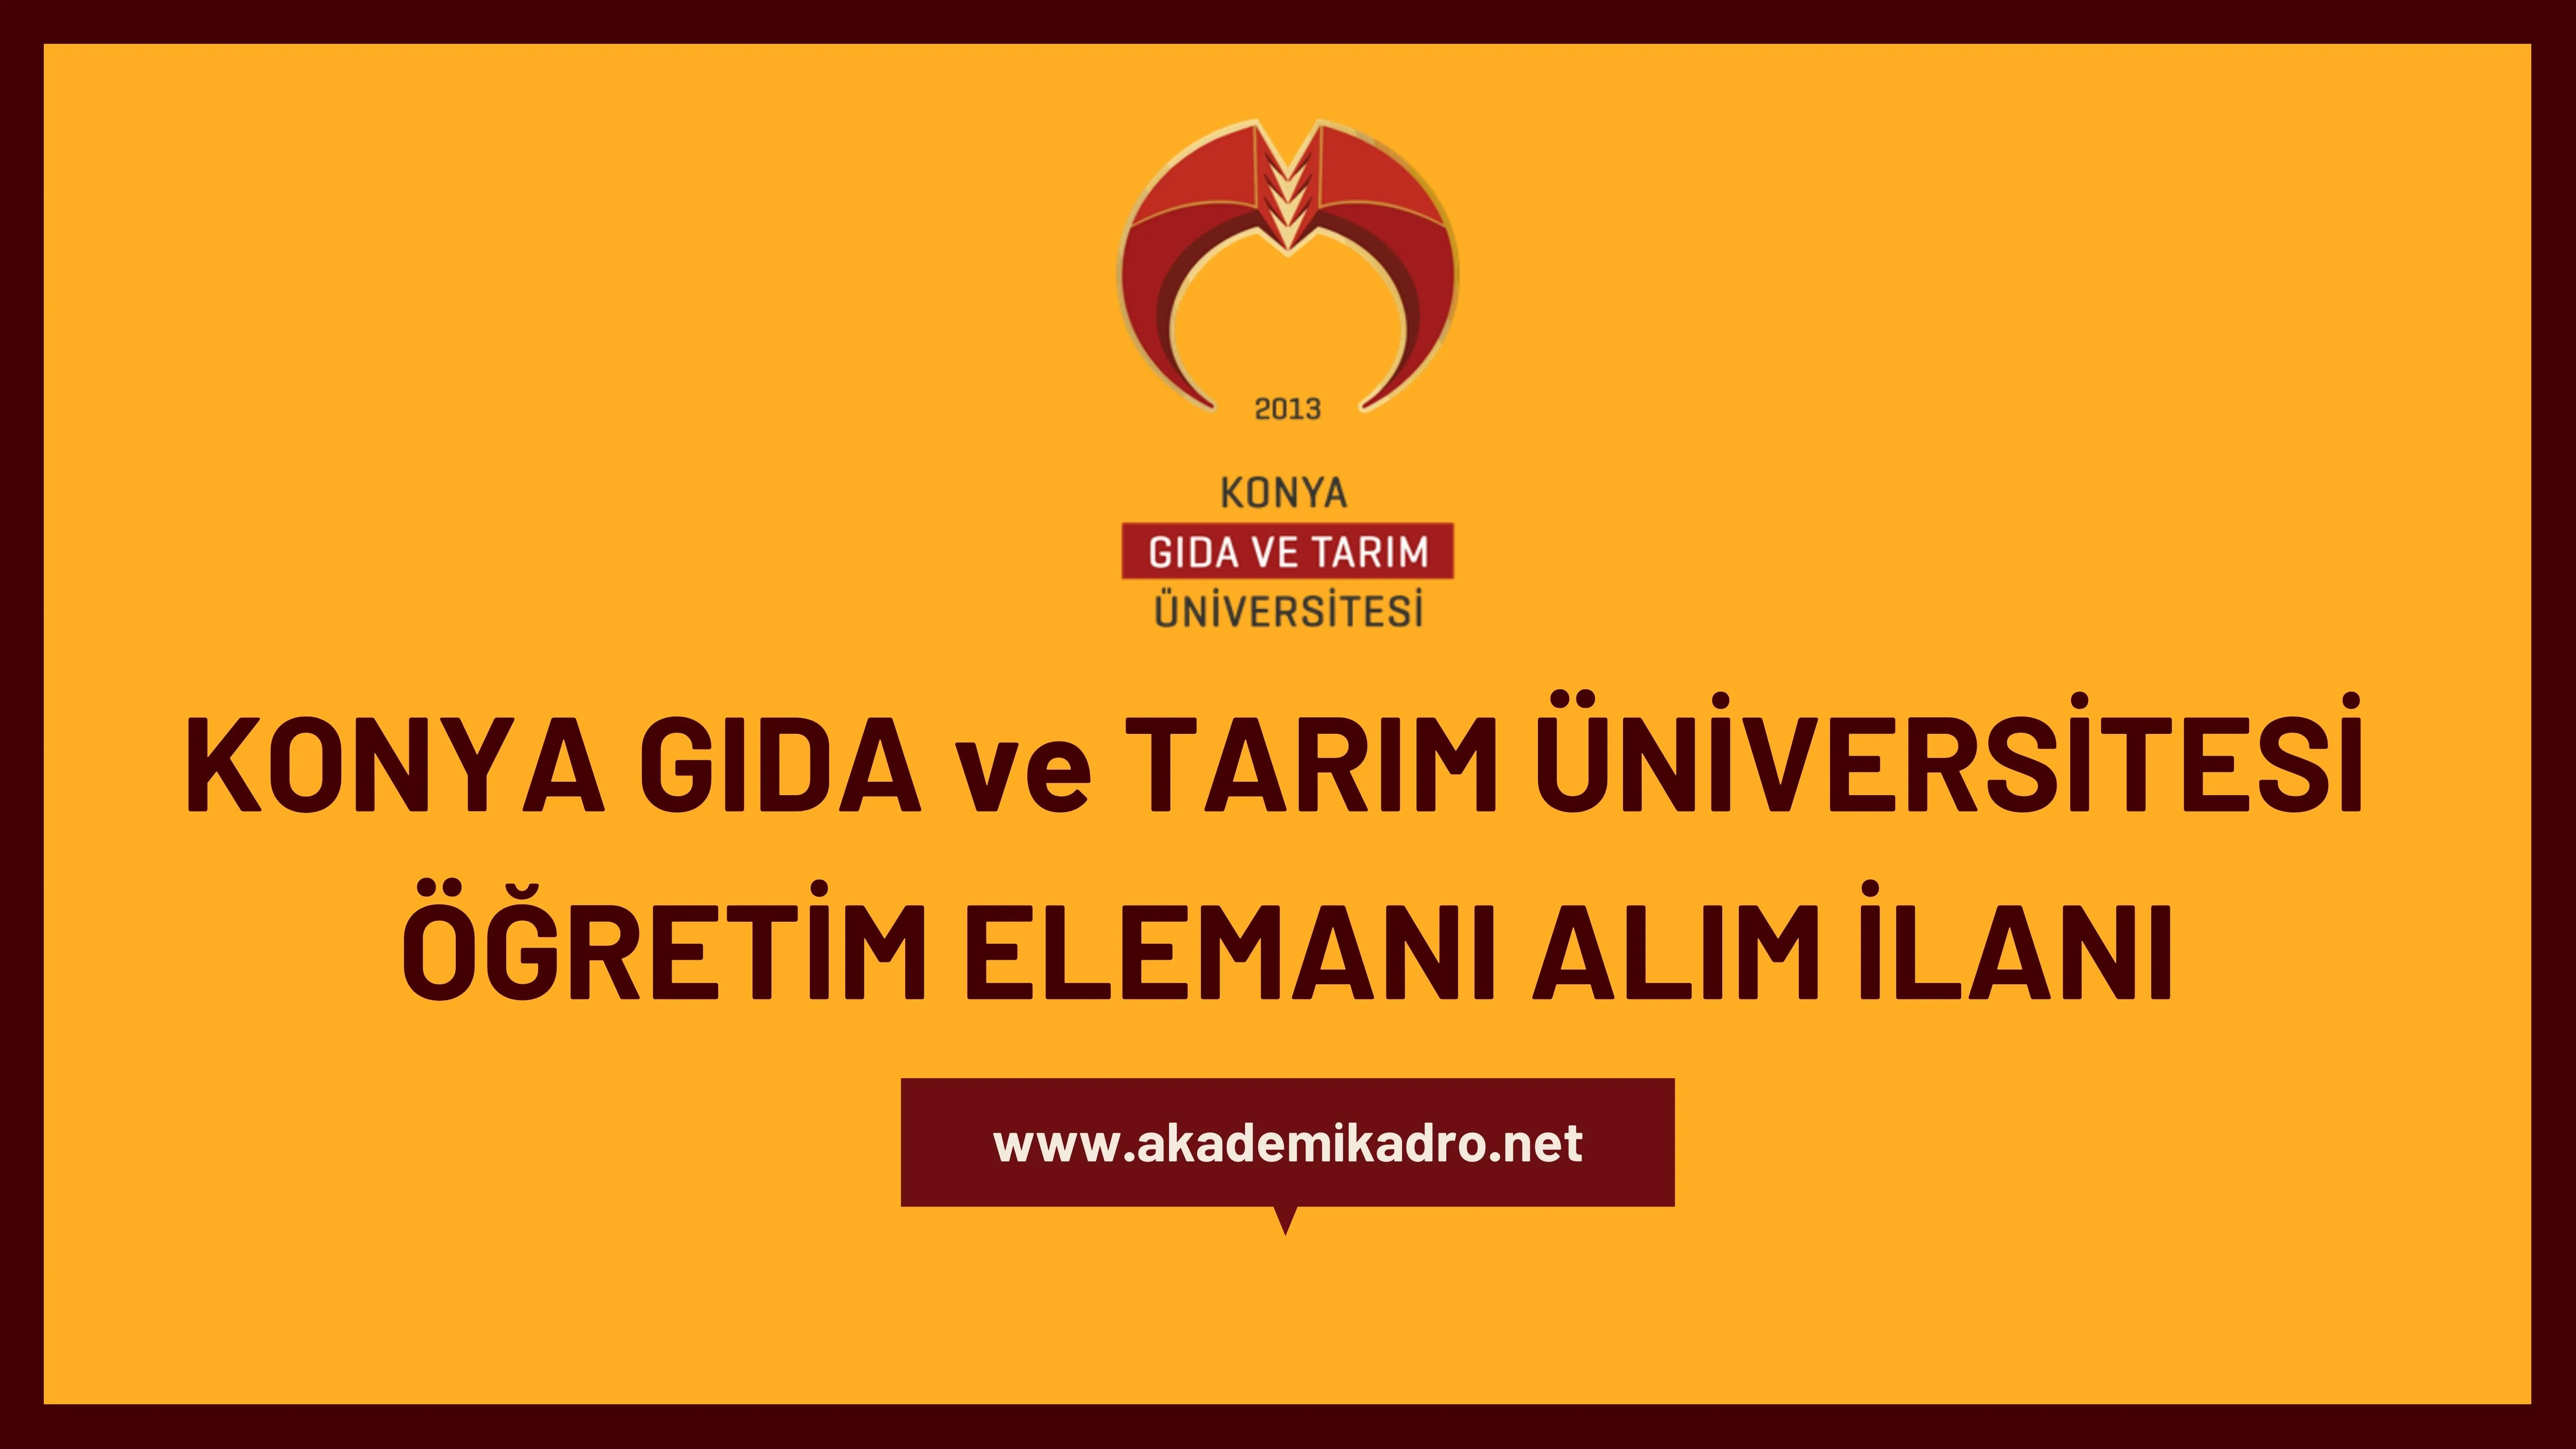 Konya Gıda ve Tarım Üniversitesi 2 Araştırma görevlisi ve çeşitli branşlarda 10 Öğretim üyesi alacak. Son başvuru tarihi 23 Kasım 2022.